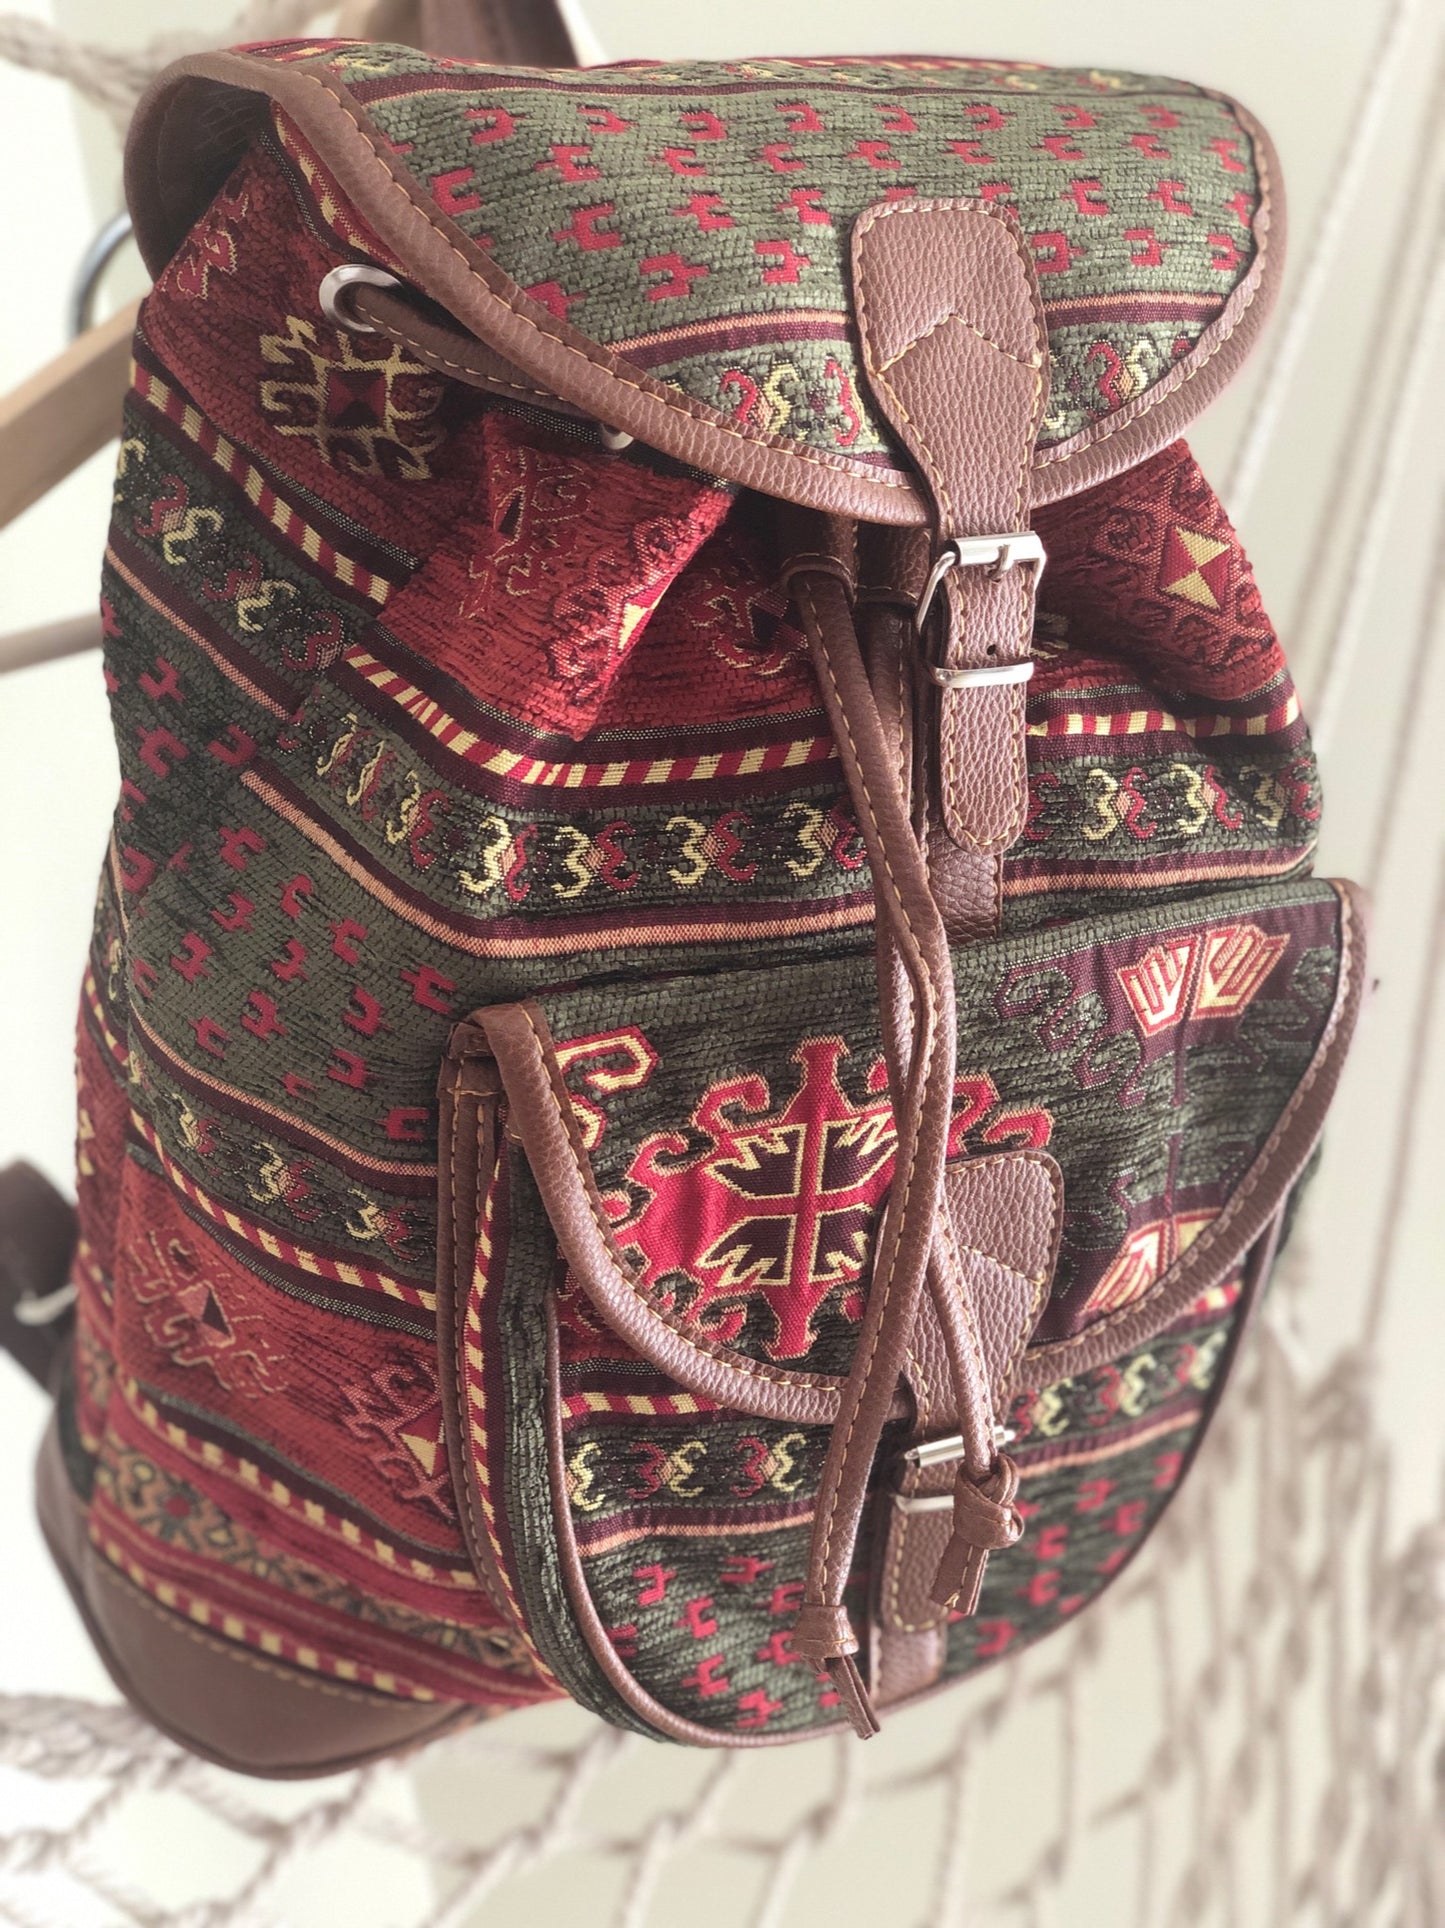 Bohemian backpack